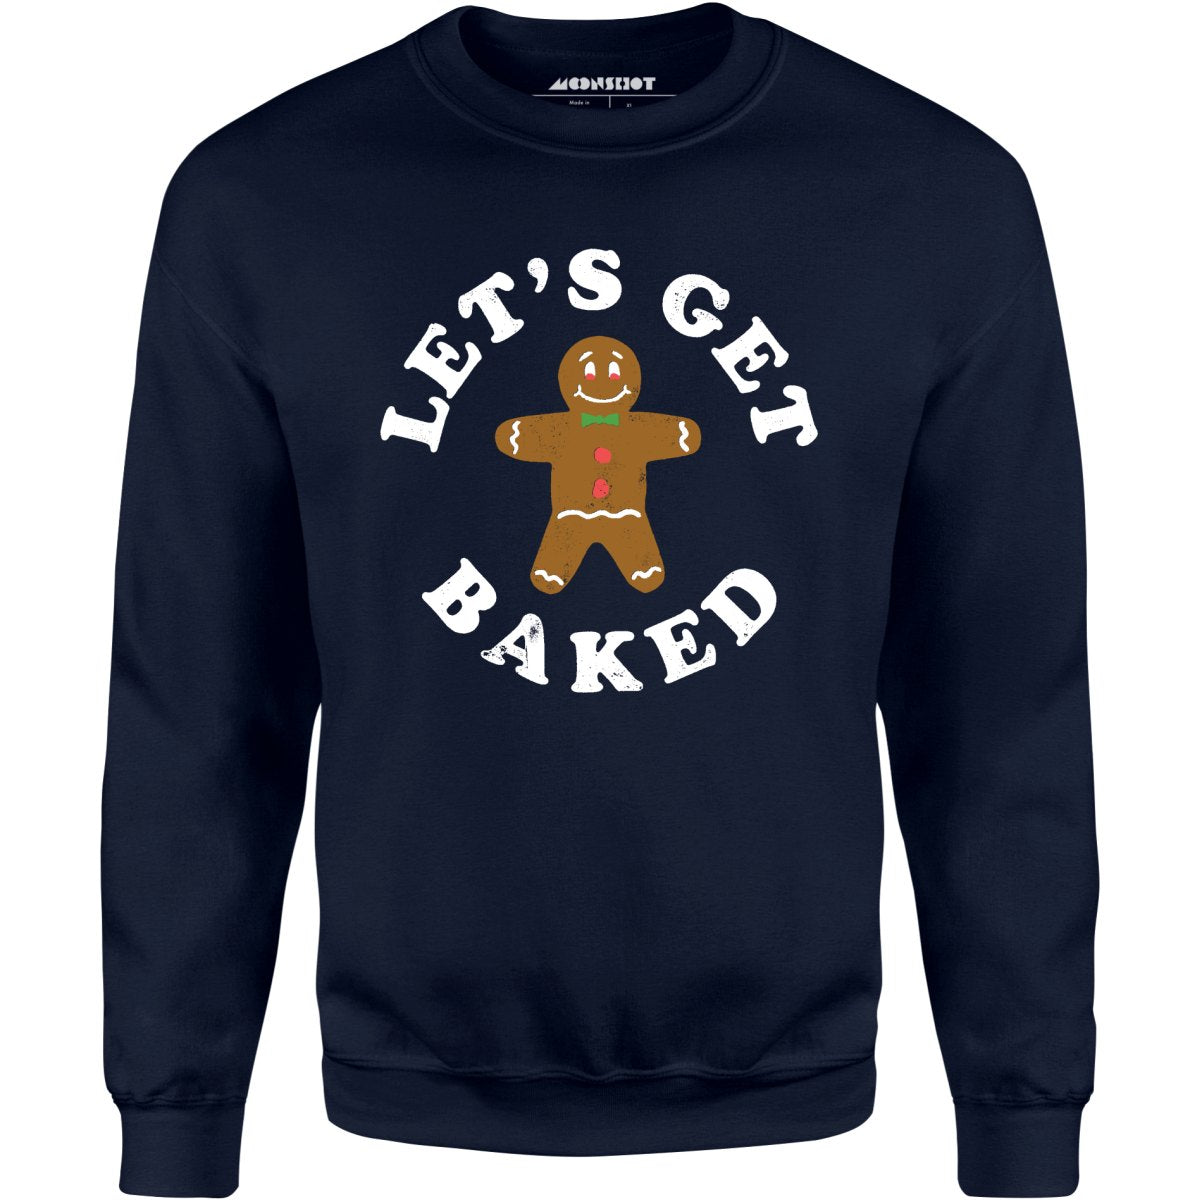 Let's Get Baked - Unisex Sweatshirt